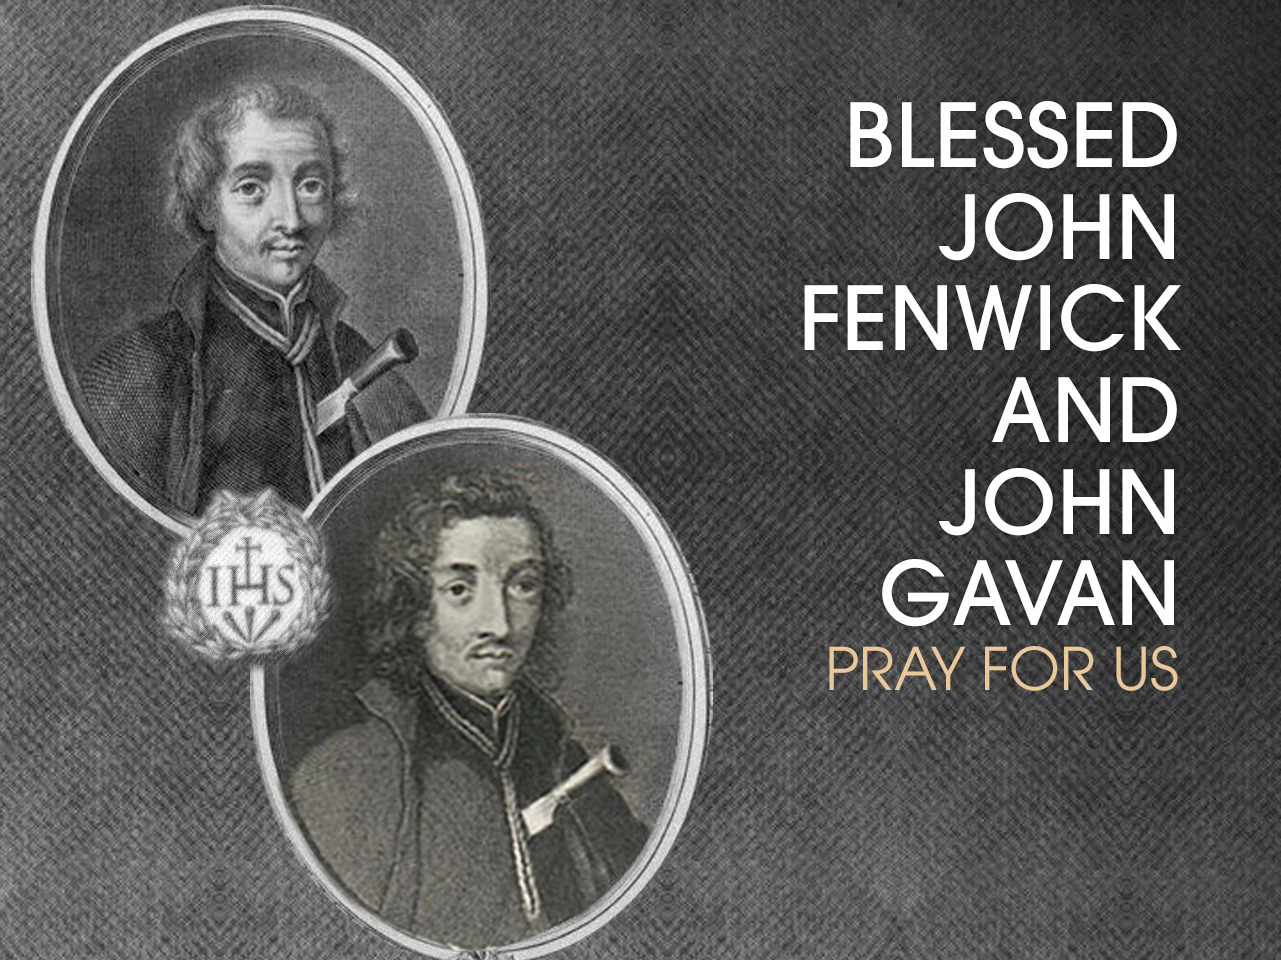 Bl. John Fenwick and Bl. John Gavan